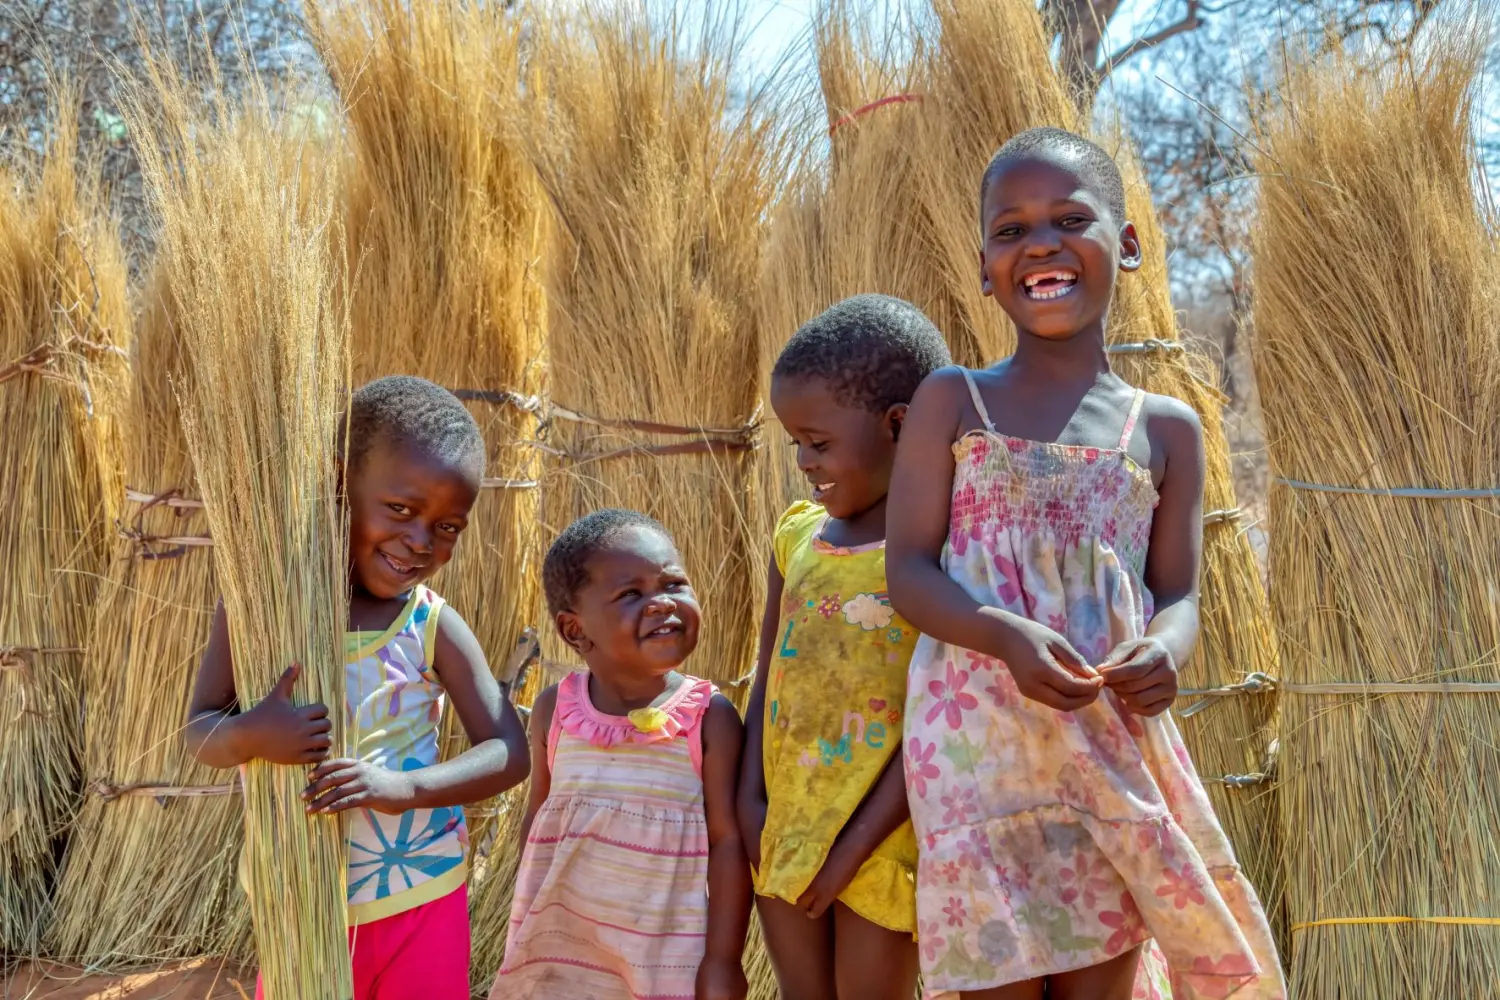 Children play in Botswana.